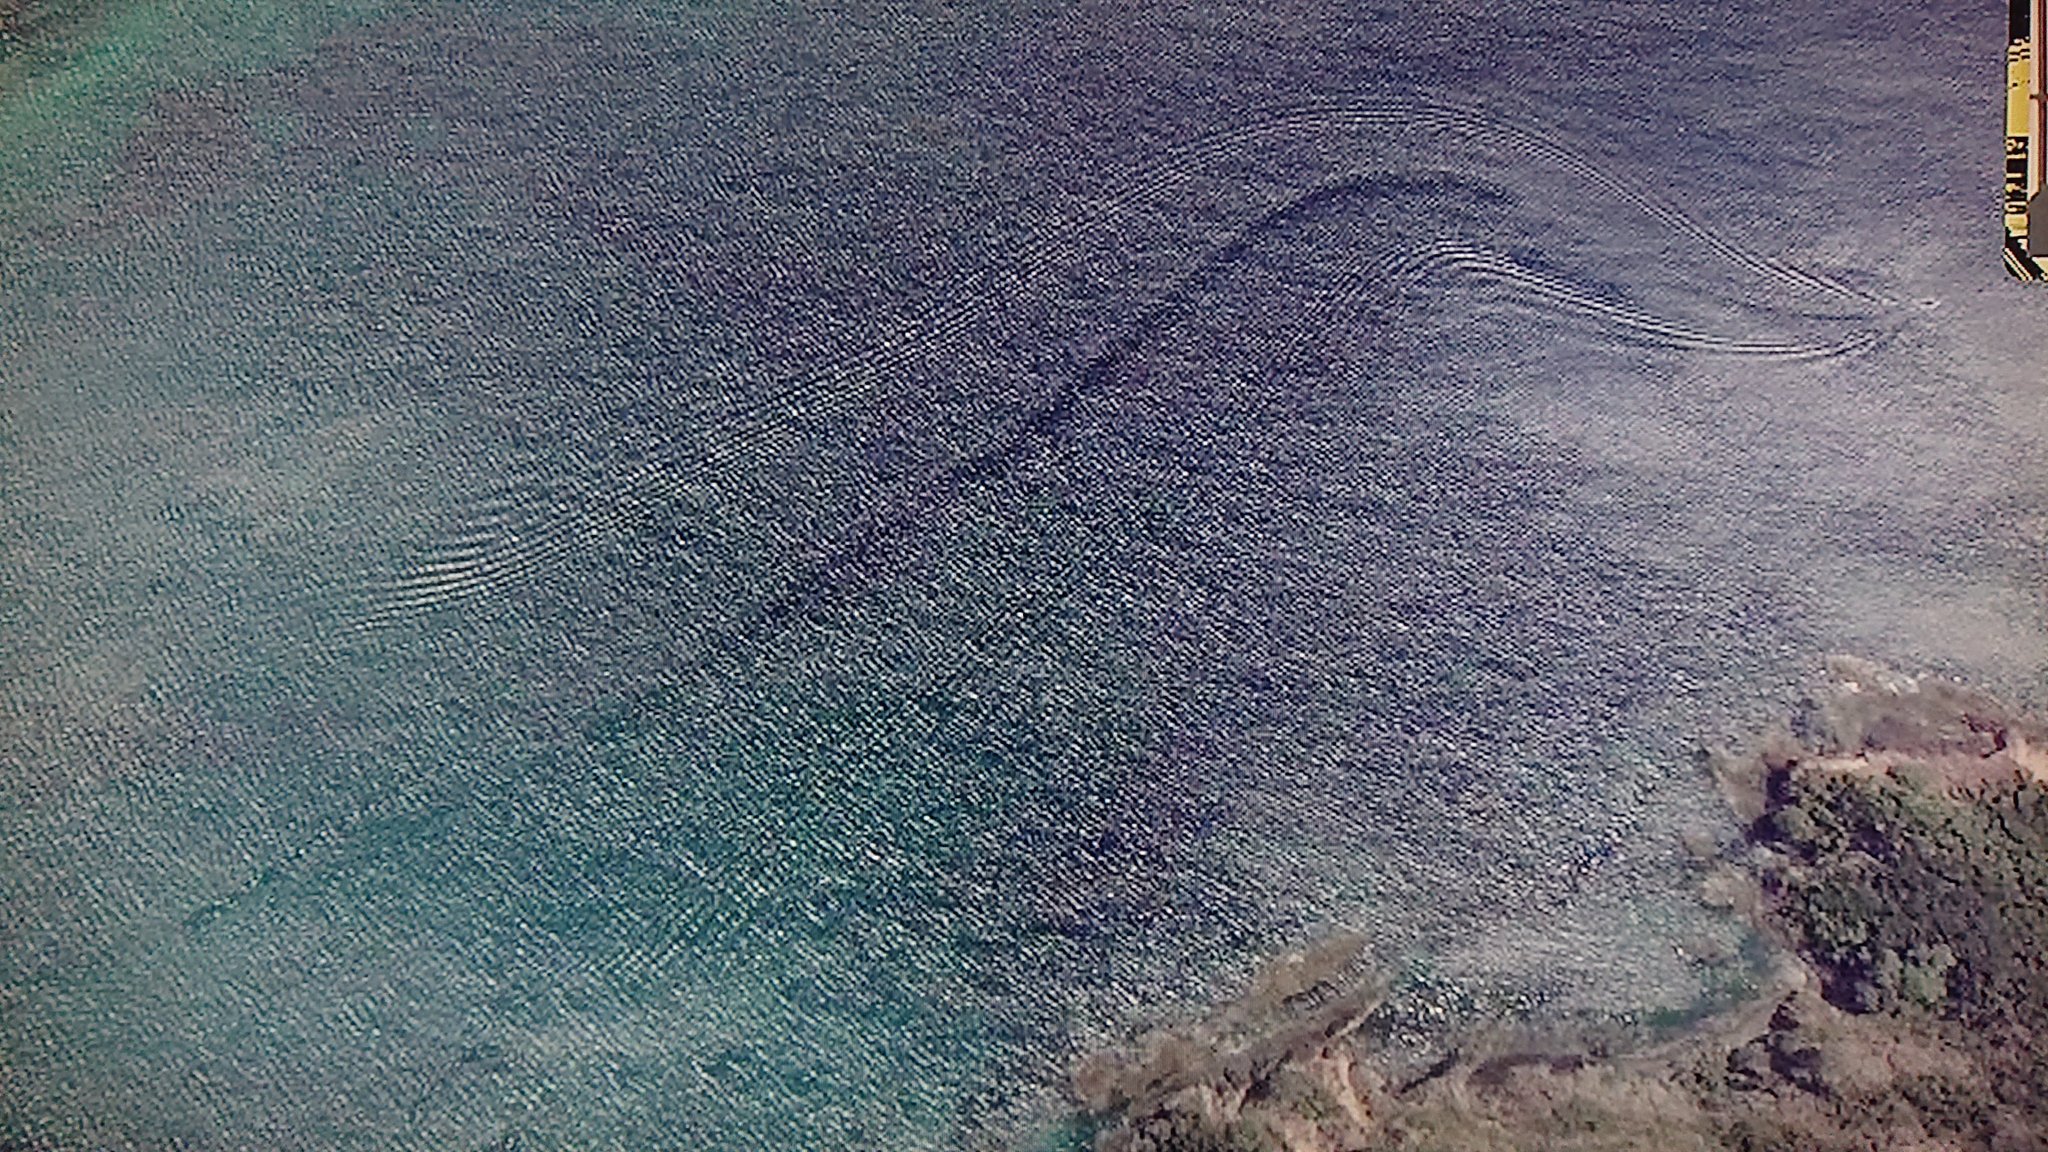 Take7700 これもグーグルアースに写ったシーサーペント 巨大海ヘビ それとも見事な航跡 おそらく航跡だと思います しかし 少し不審な点が Uma シーサーペント 航跡 グーグルアース T Co Jvxrd7qk5d Twitter